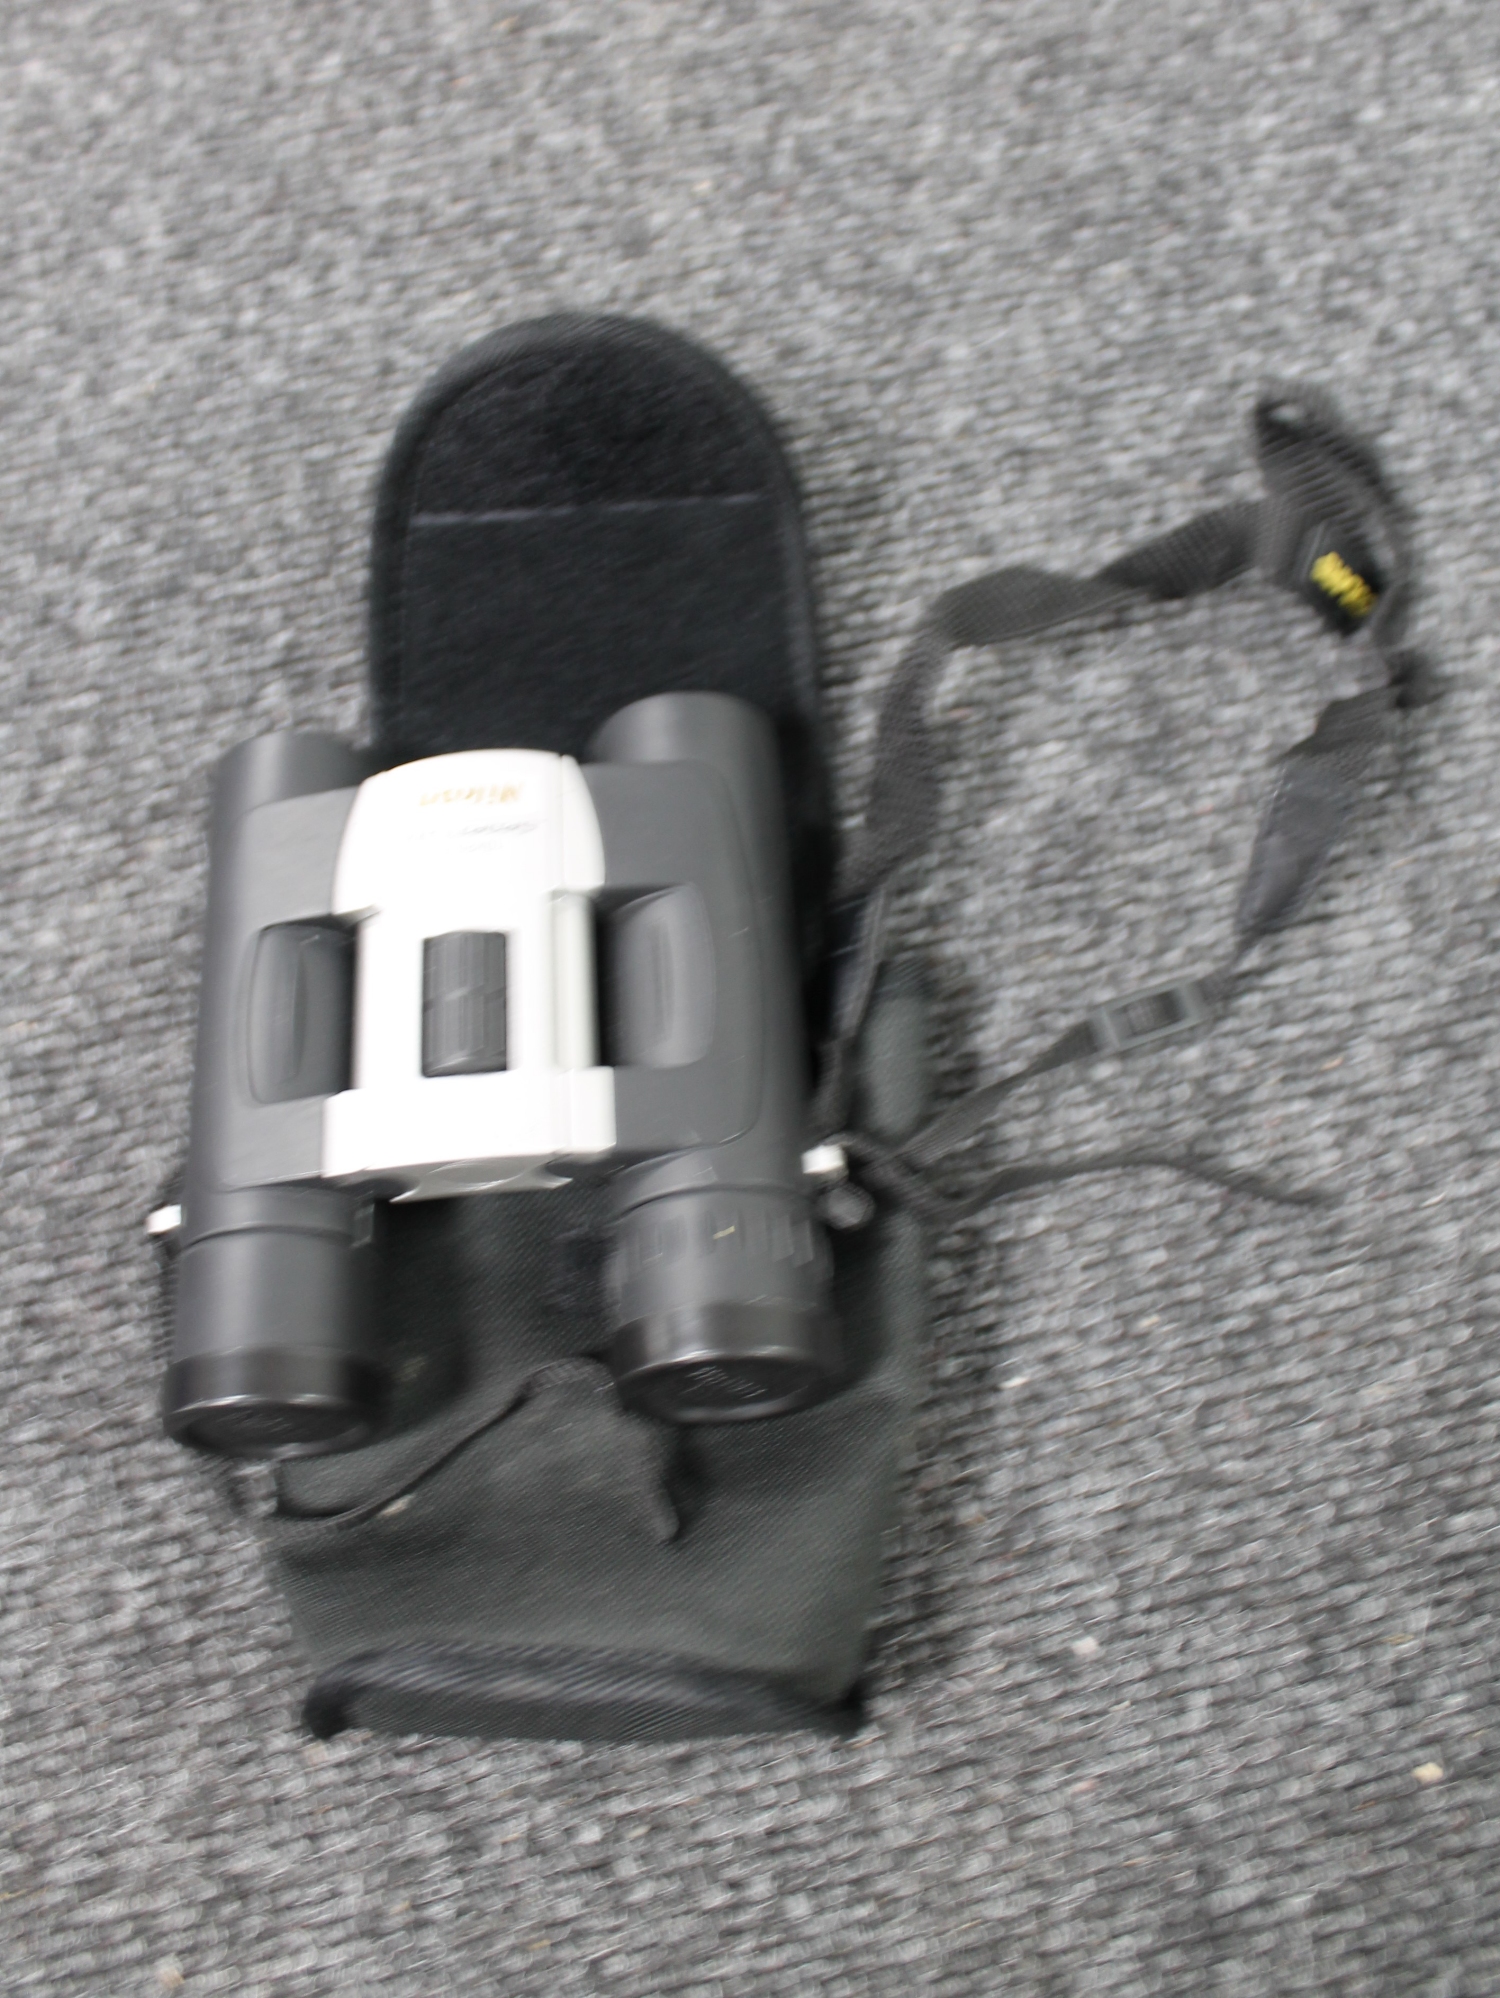 A pair of cased Nikon sport lite 10x 25 binoculars